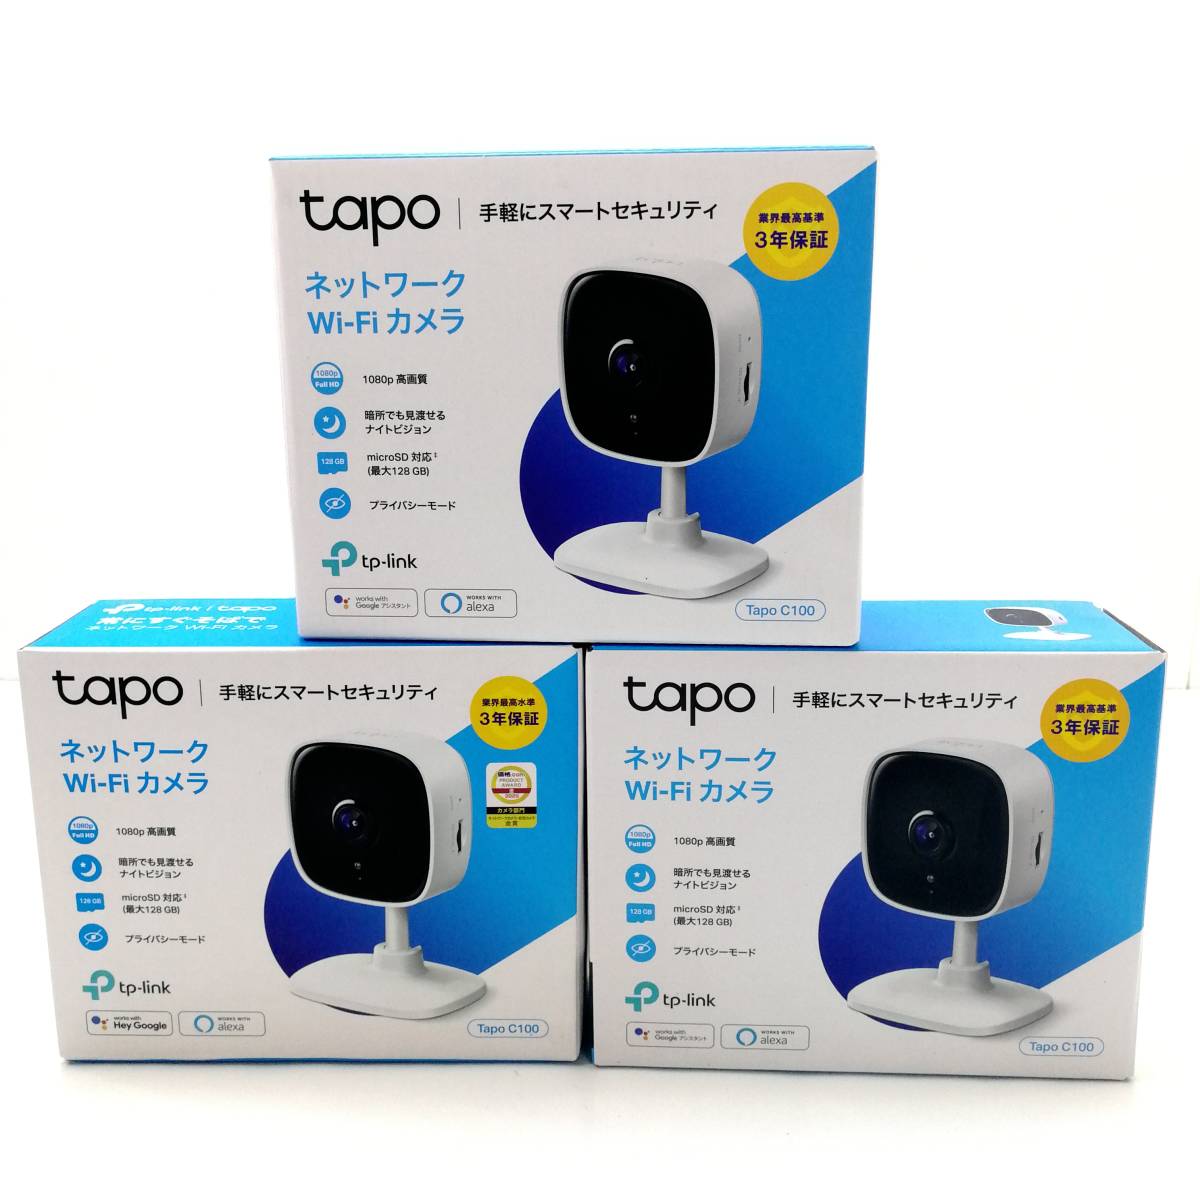 [T067]* электризация подтверждено *TAPO C100 совместно 3 шт. TP-Link сеть Wi-Fi камера полный HD закрытый камера вечер фотосъемка .. звук разговор смартфон сообщение 